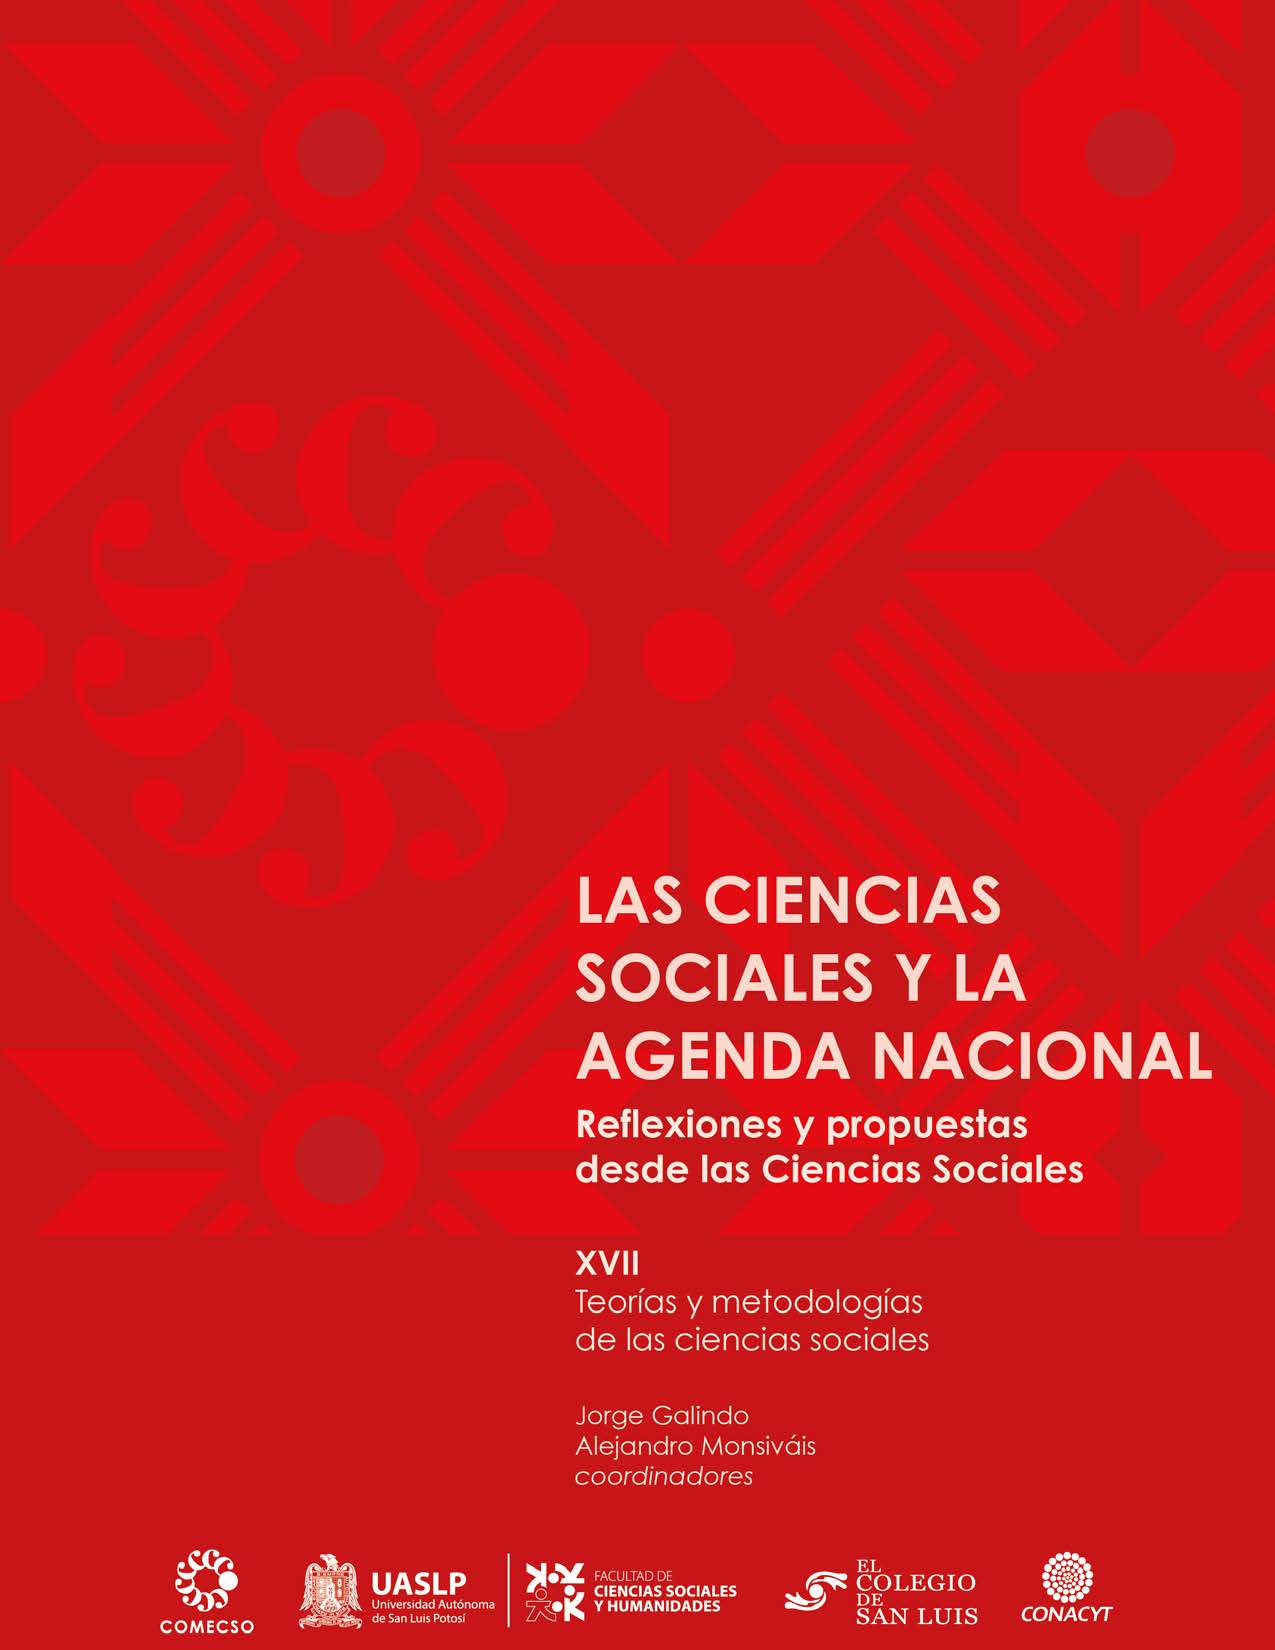 Vol. XVII. Teorías y metodologías de las ciencias sociales